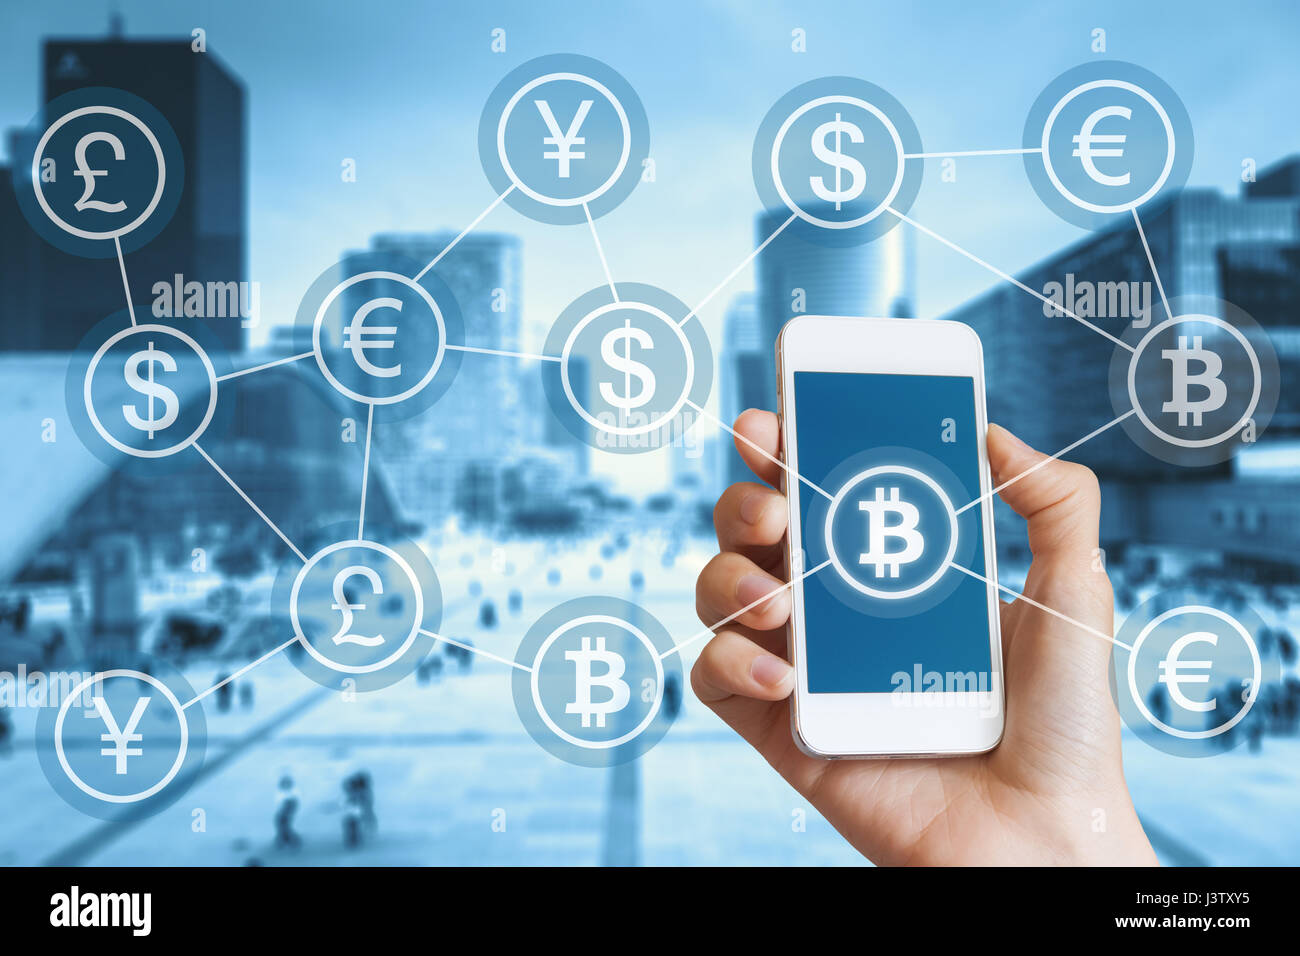 Blockchain cryptocurrency Bitcoin et concept pour paiement numérique avec une personne utilisant un smartphone, bakground ville et un réseau de service connecté Banque D'Images